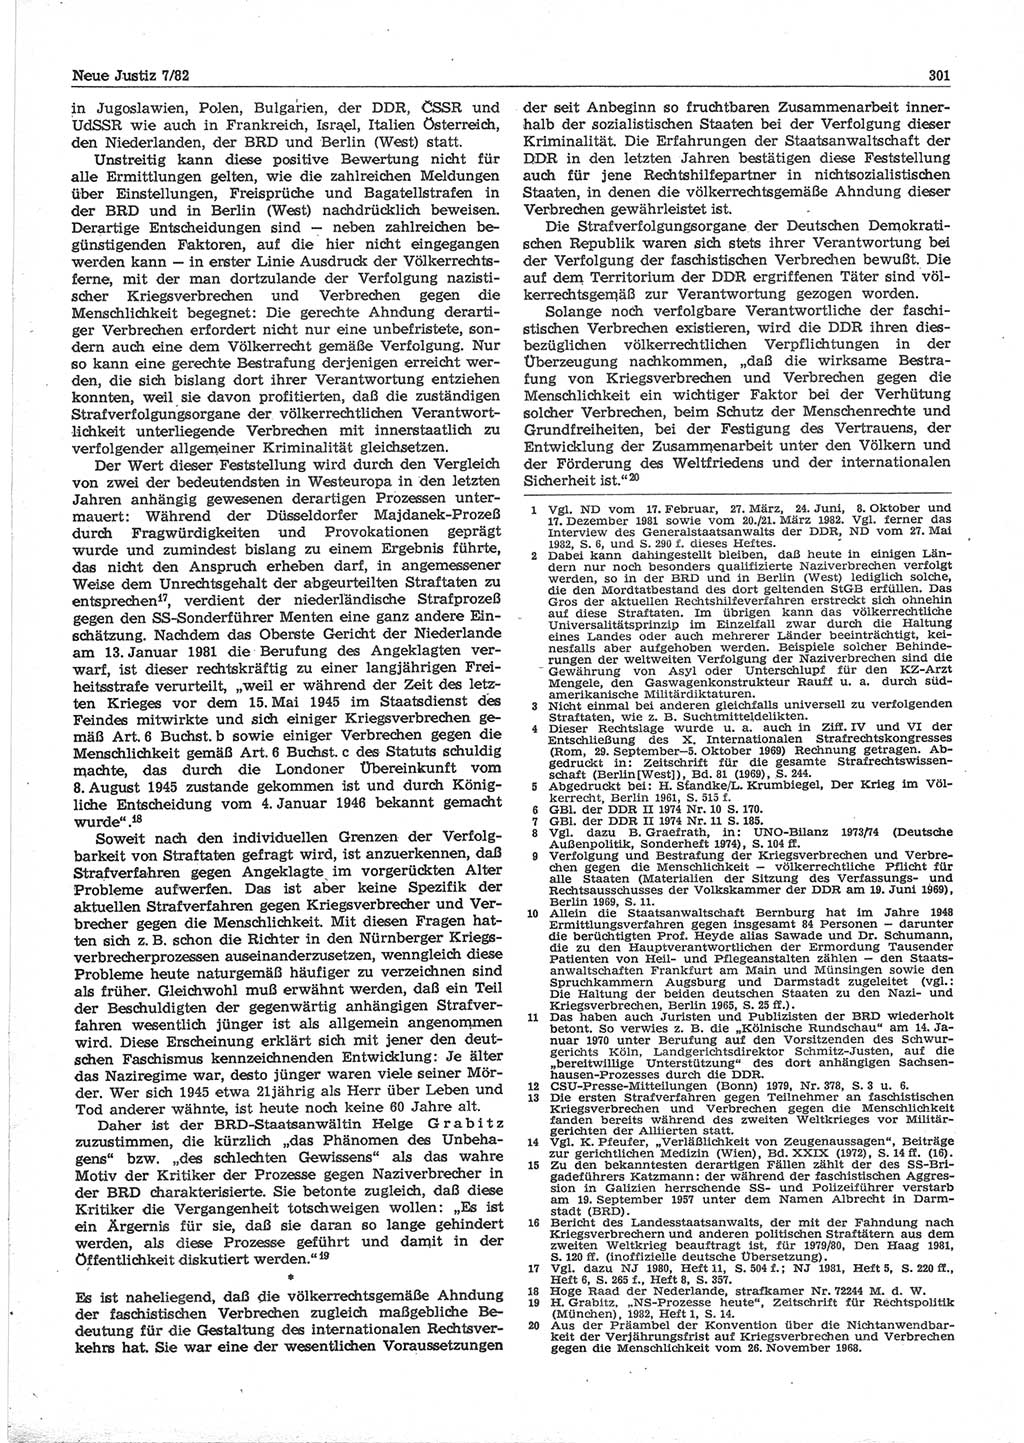 Neue Justiz (NJ), Zeitschrift für sozialistisches Recht und Gesetzlichkeit [Deutsche Demokratische Republik (DDR)], 36. Jahrgang 1982, Seite 301 (NJ DDR 1982, S. 301)